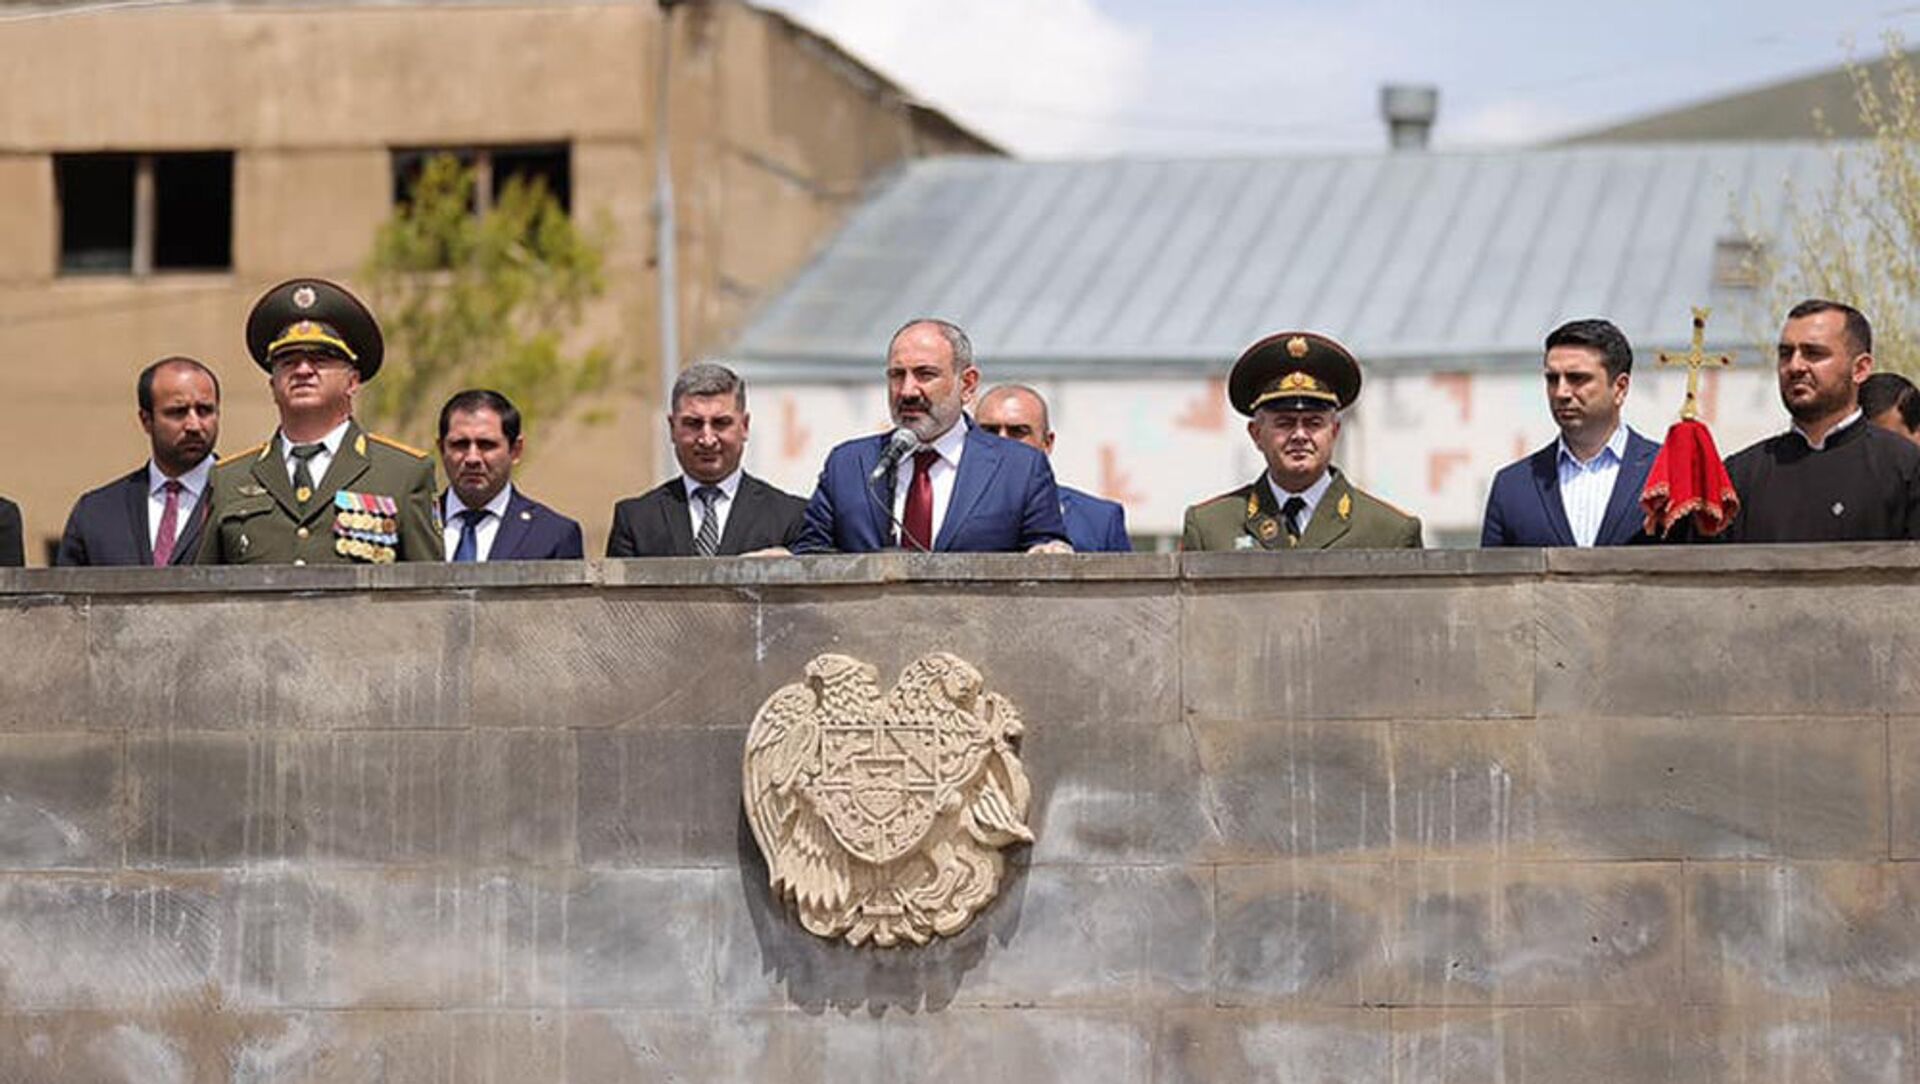 Никол Пашинян в сопровождении начальника Генштаба вооруженных сил Артака Давтяна посетил N военную часть Гегаркуникской области (9 мая 2021) - Sputnik Армения, 1920, 09.05.2021